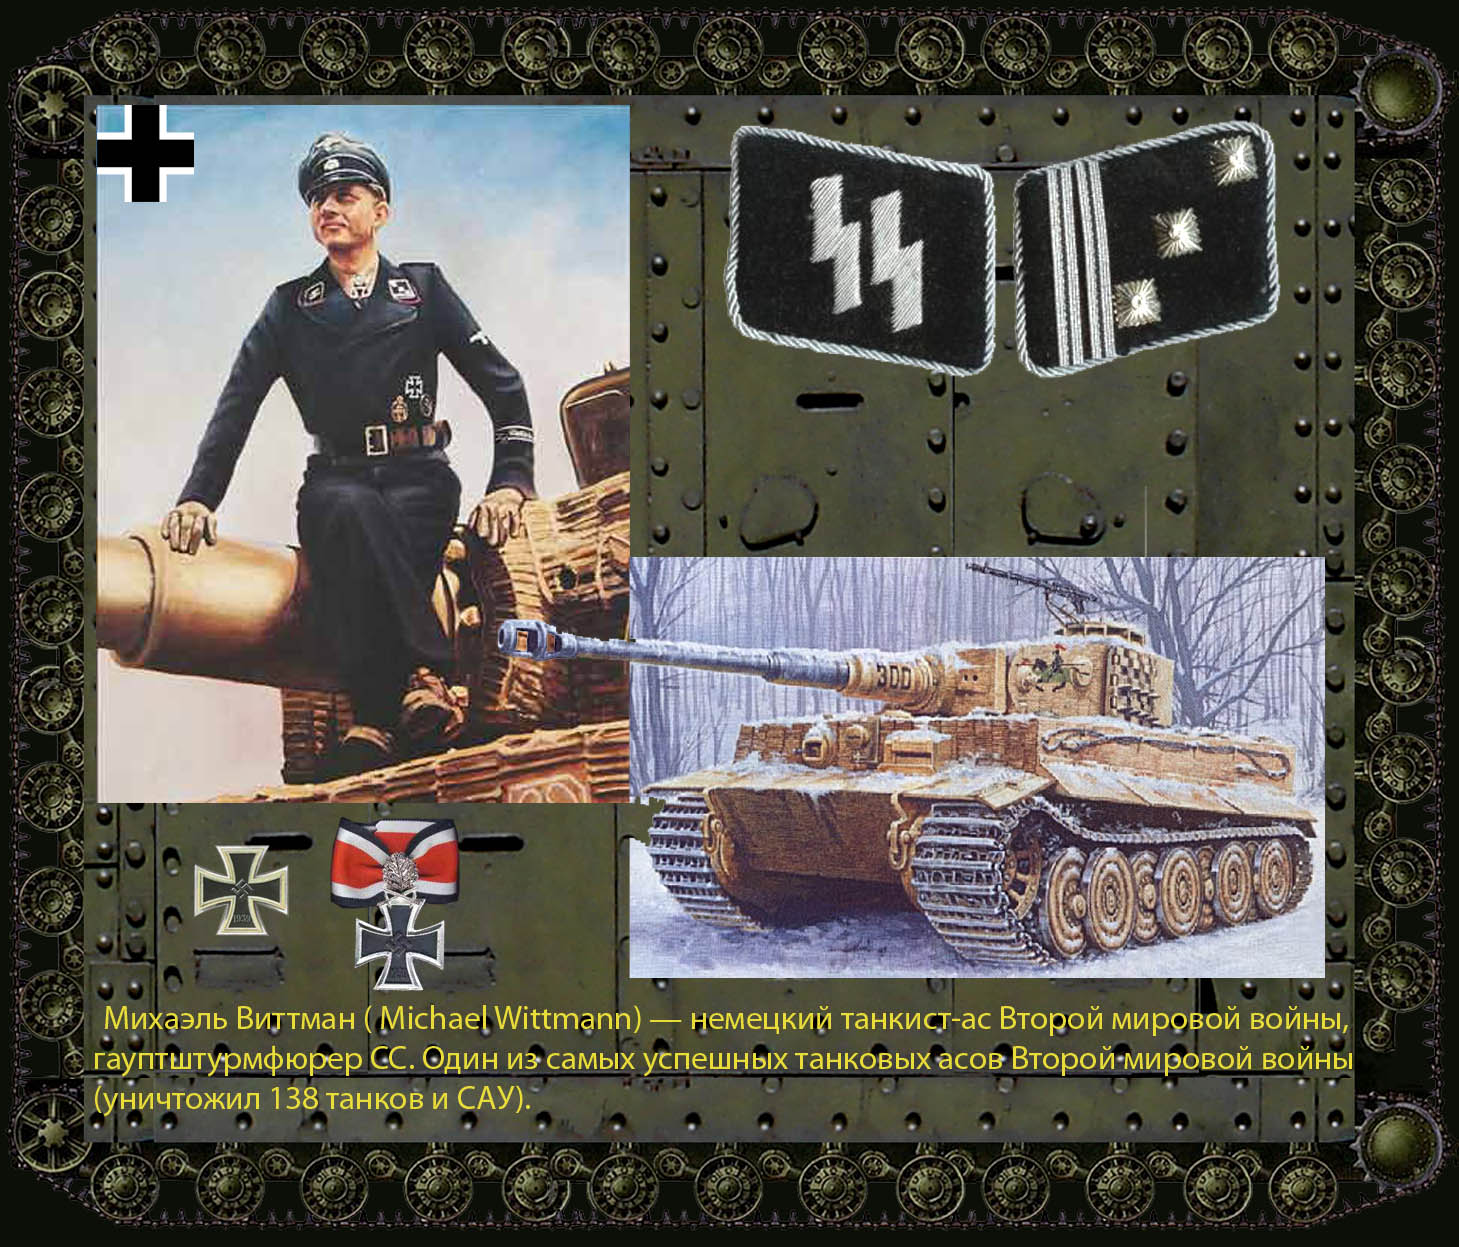 Танкисты АСЫ второй мировой войны Германии